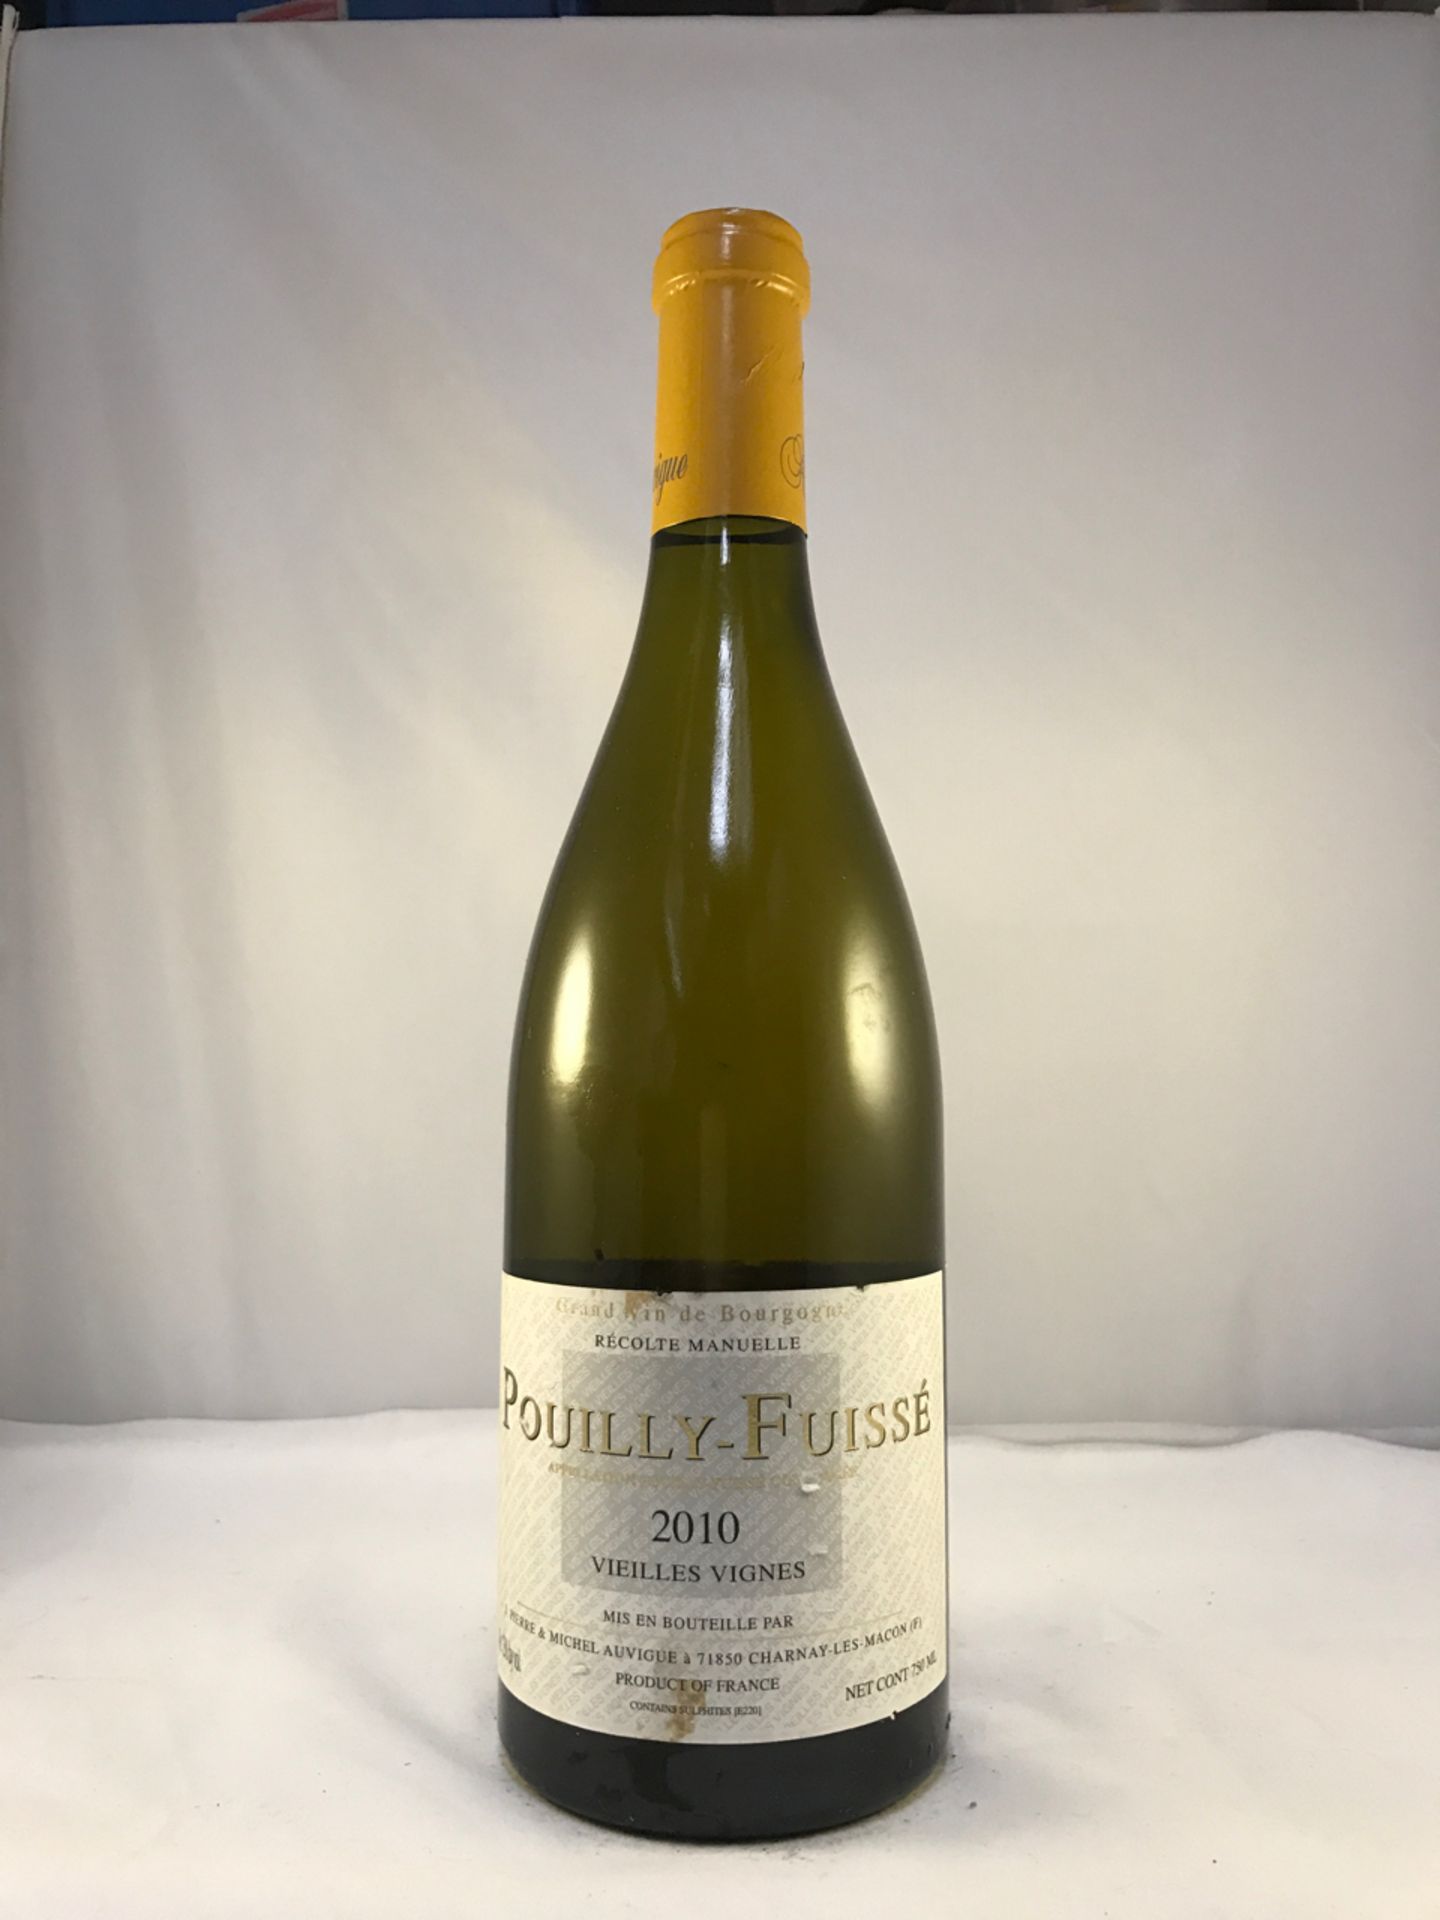 Jean Pierre & Michel Pouilly-Fuisse Vieilles Vignes 2010 750ml Bottle